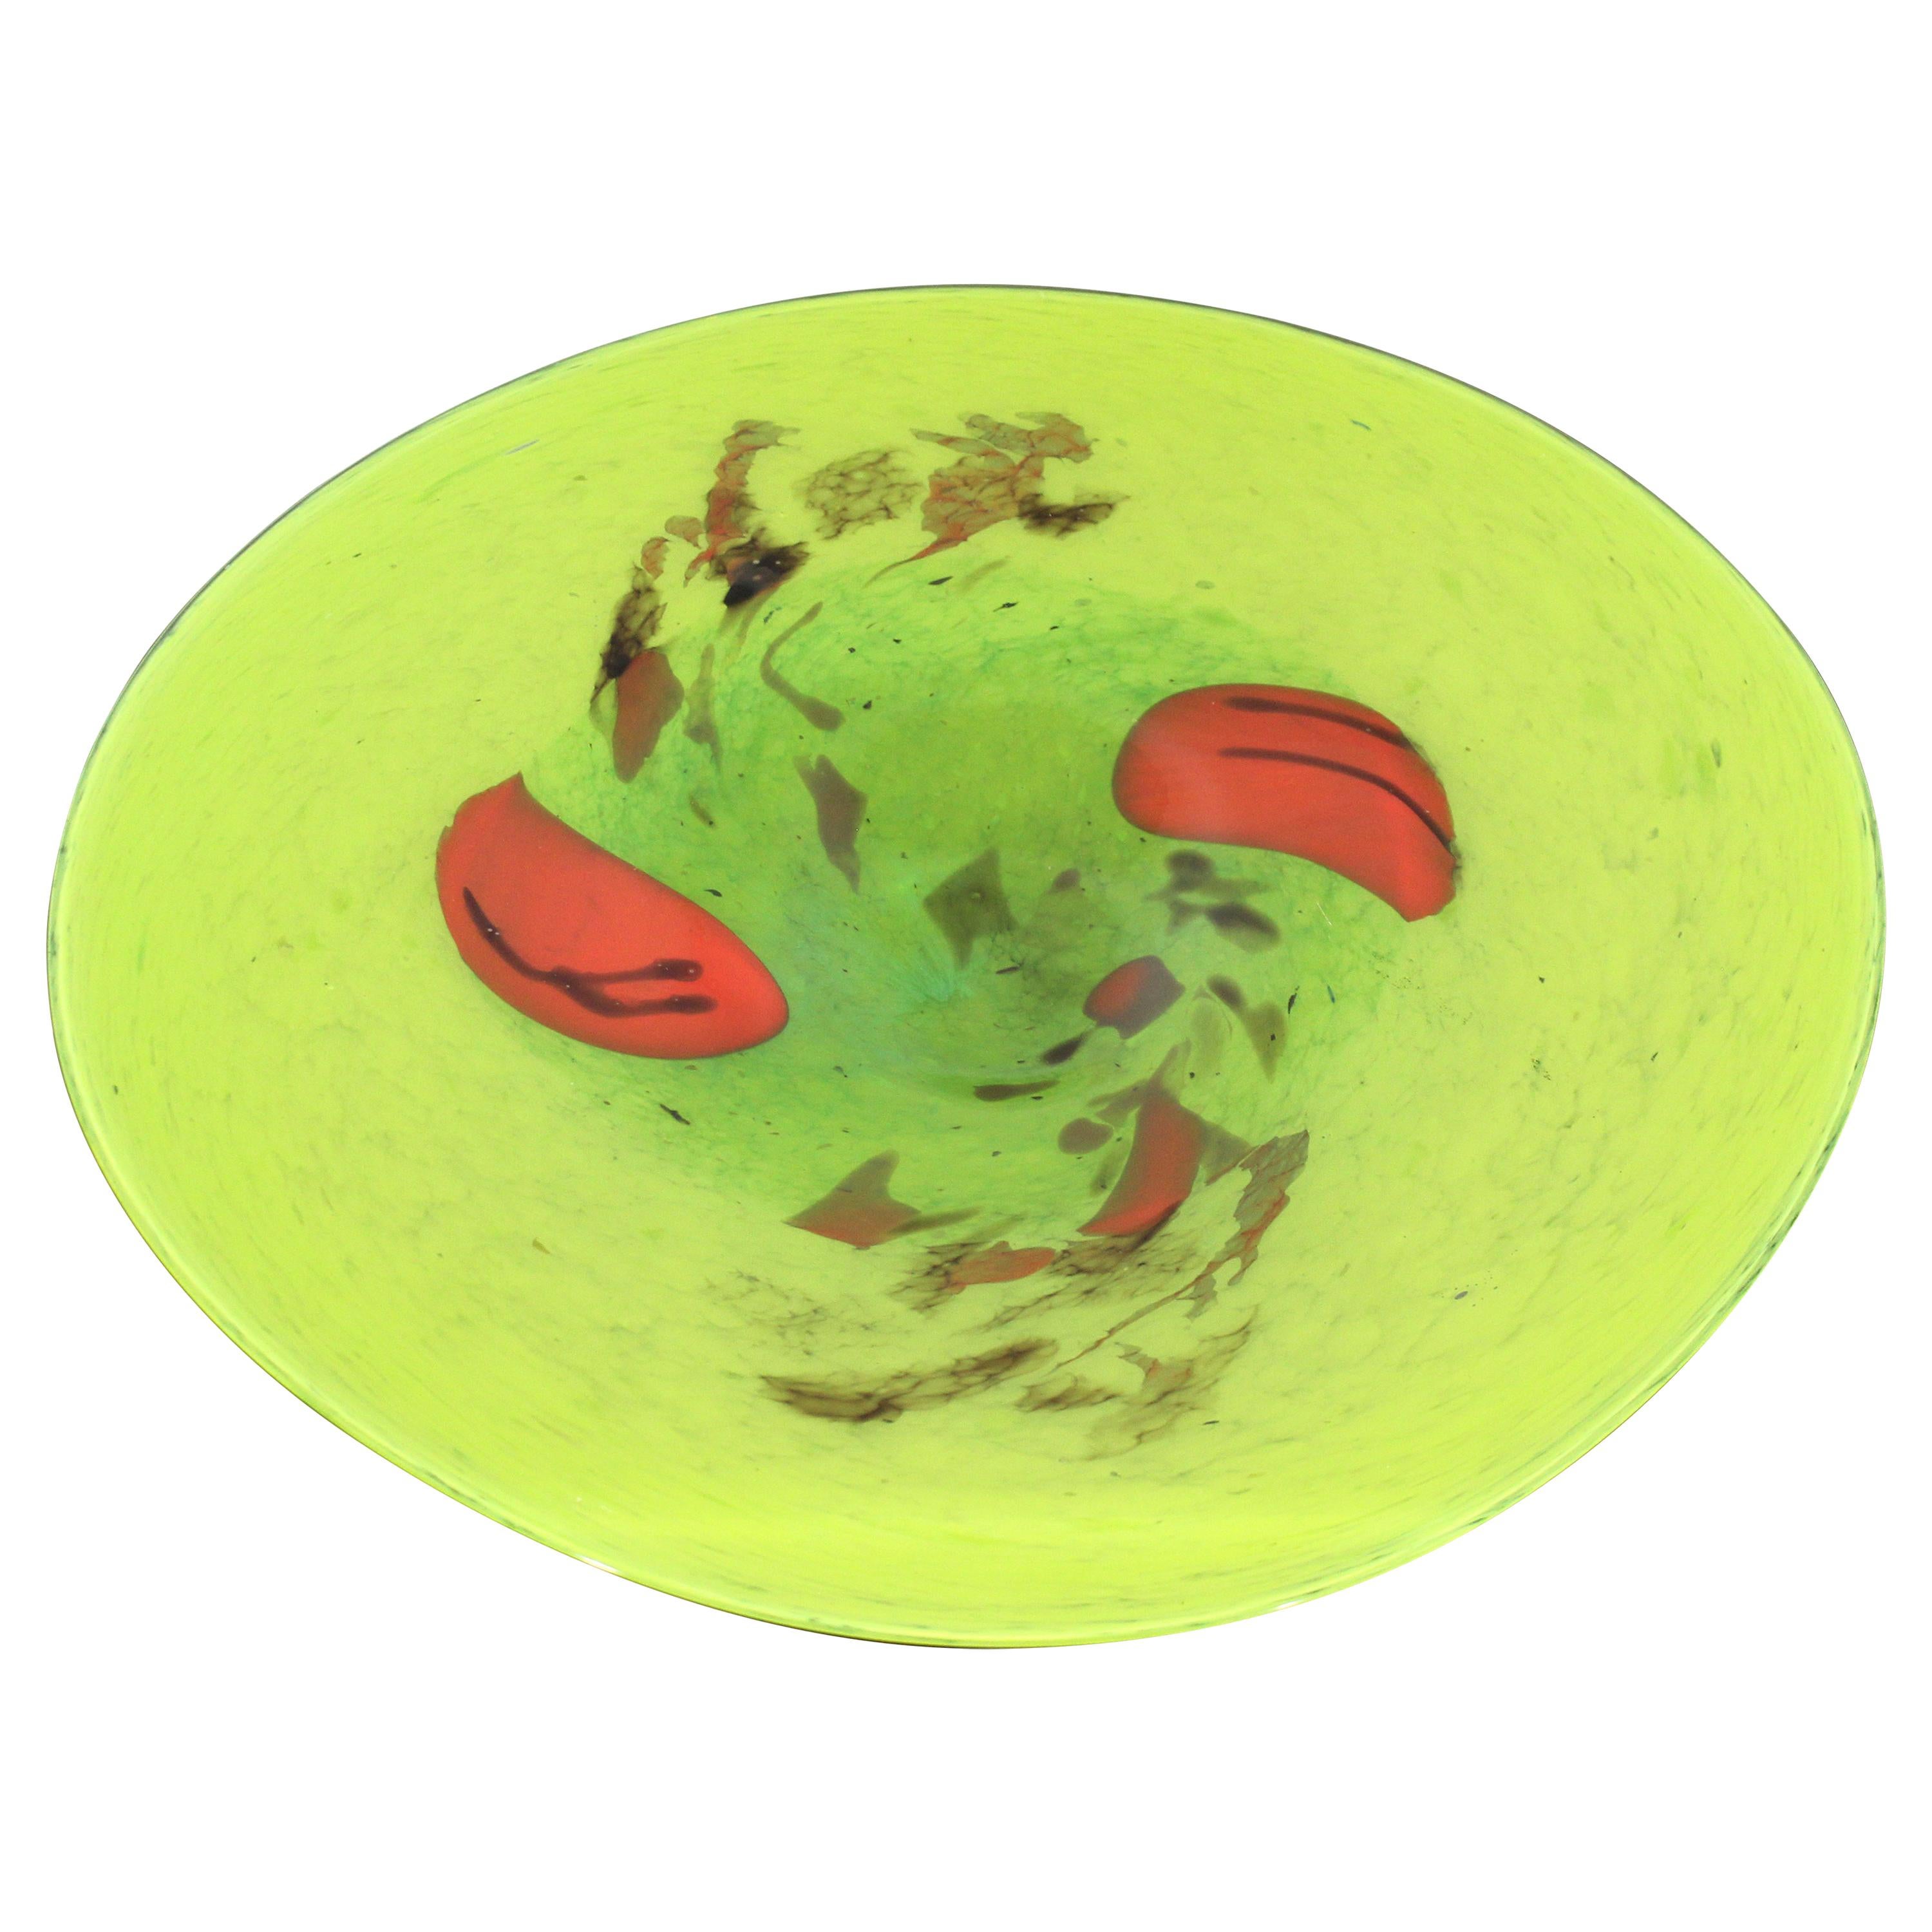 Contemporary Modernist Green Art Glass Centerpiece Bowl Sculpture Floral Red